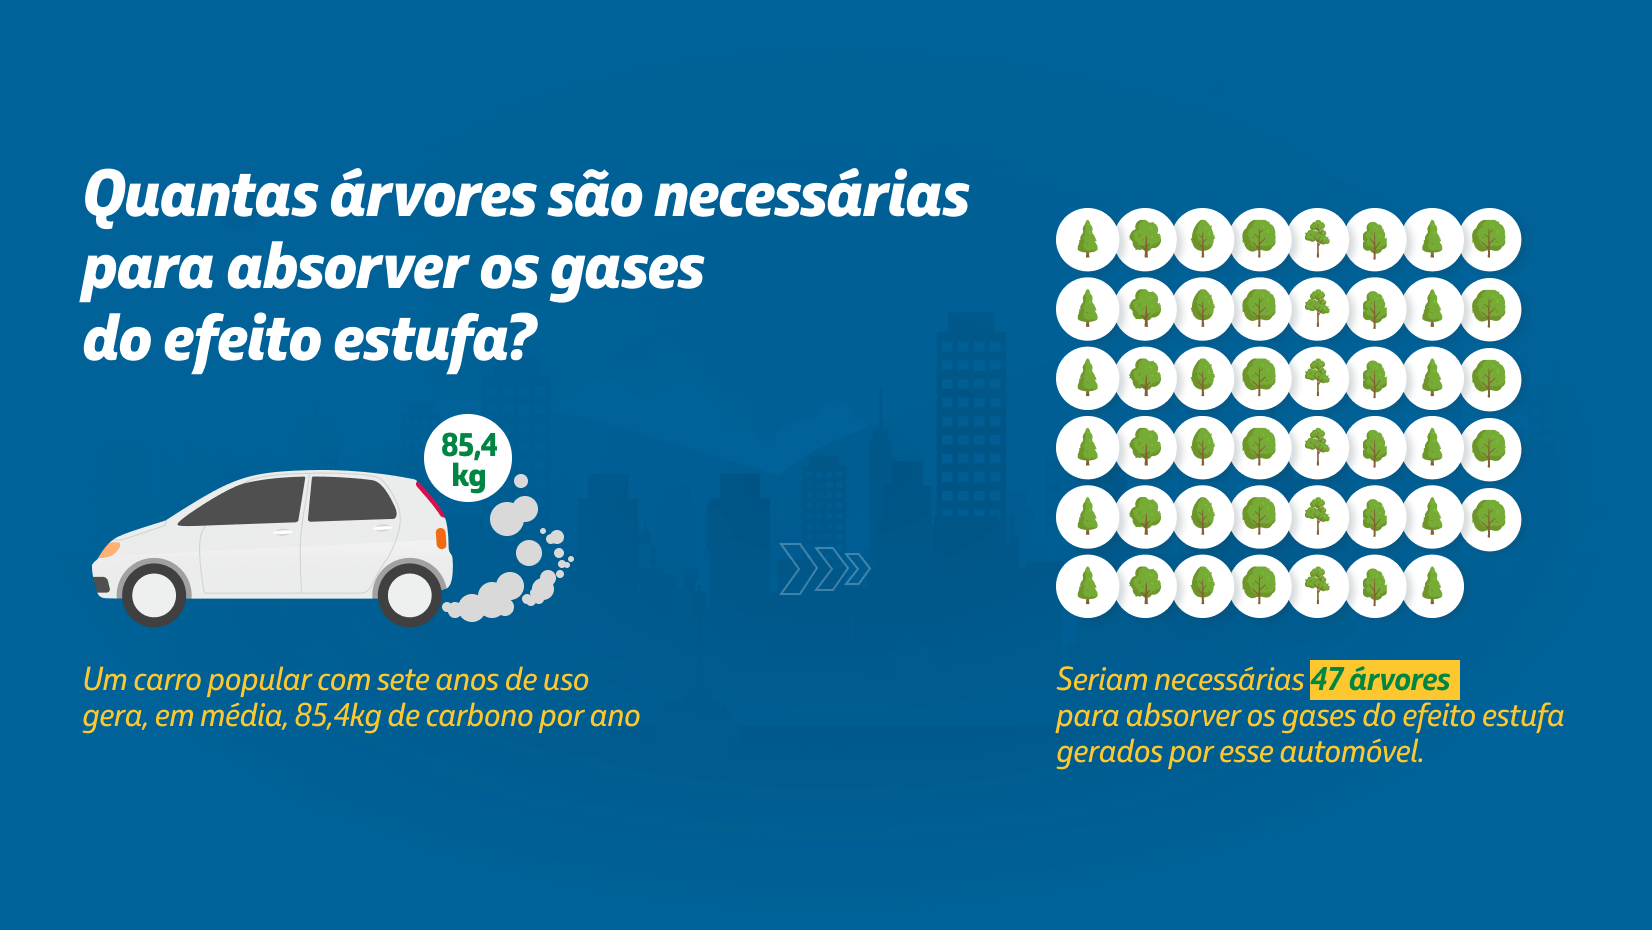 Seriam necessárias, em média, 47 árvores para absorver os gases de efeito estufa de um carro popular.